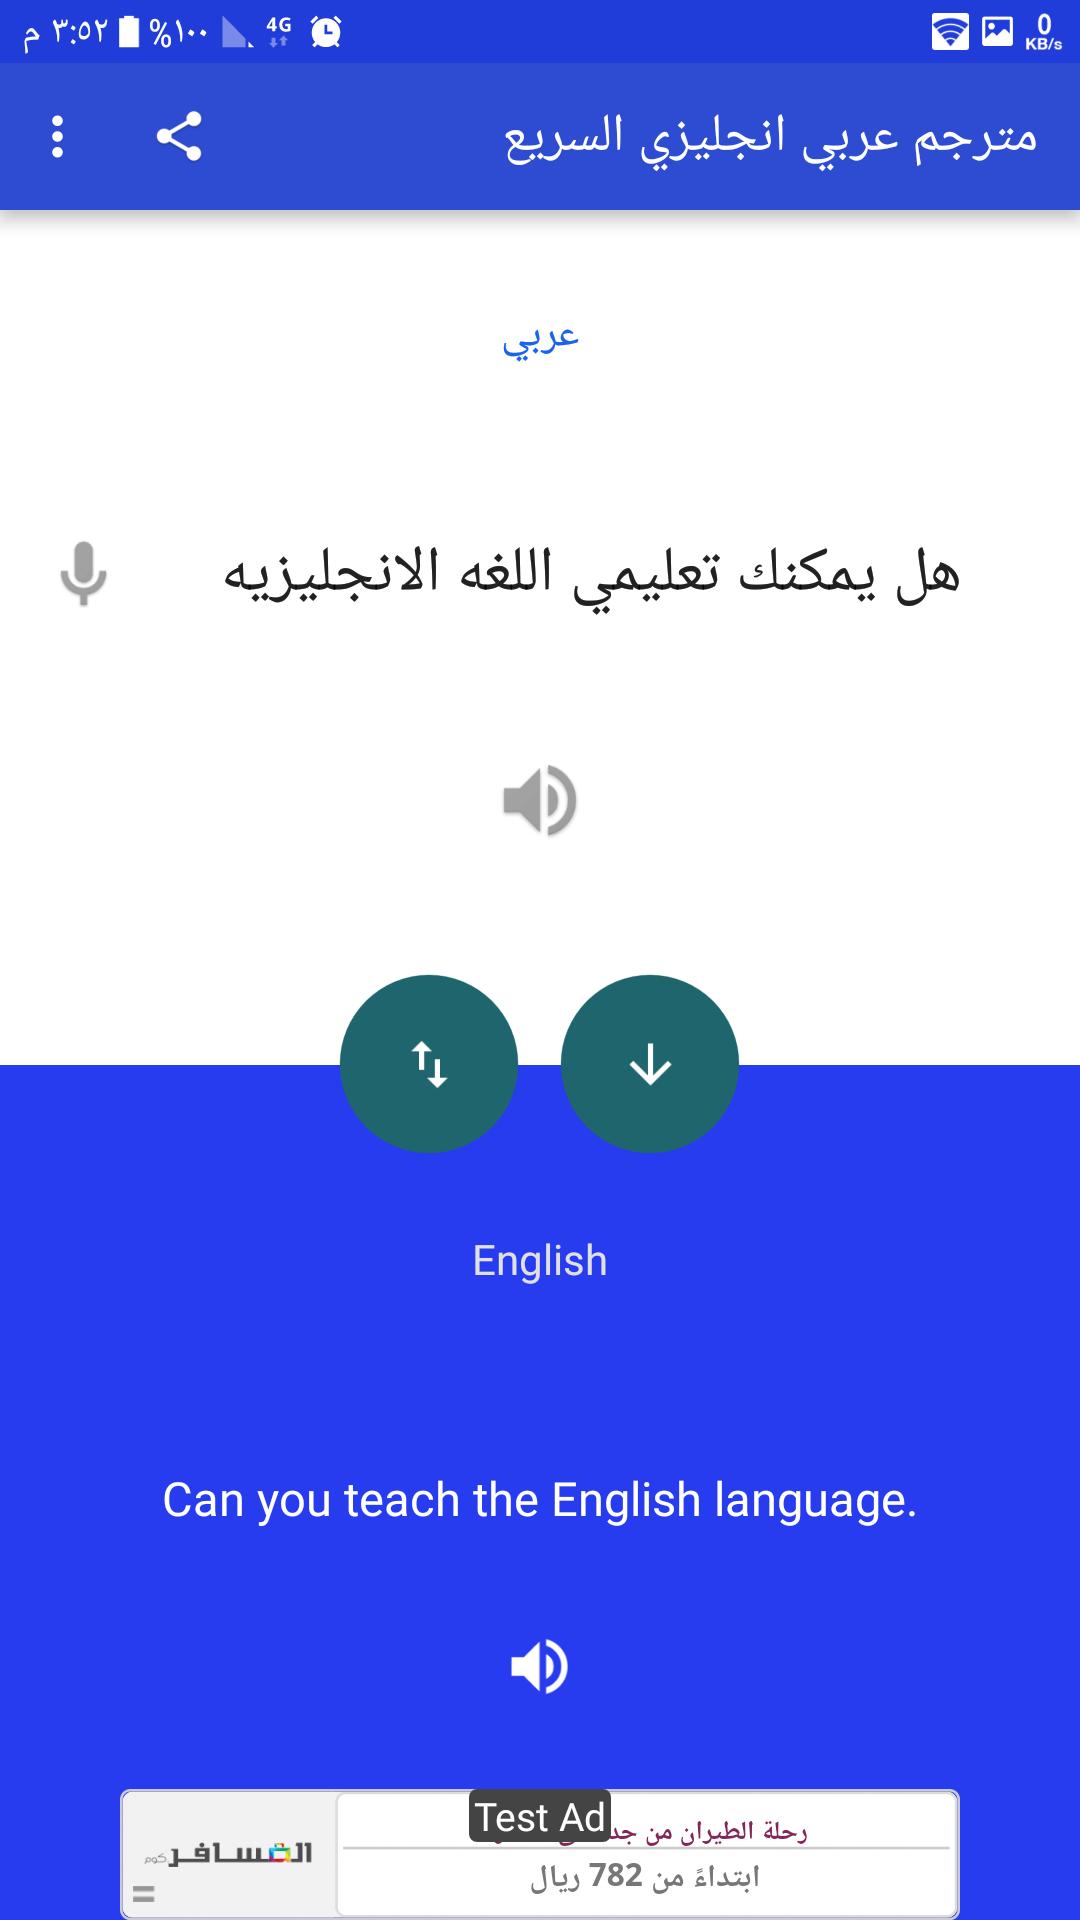 مترجم وقاموس عربي انجليزي الذكي يترجم جمل و كلمات for Android - APK Download